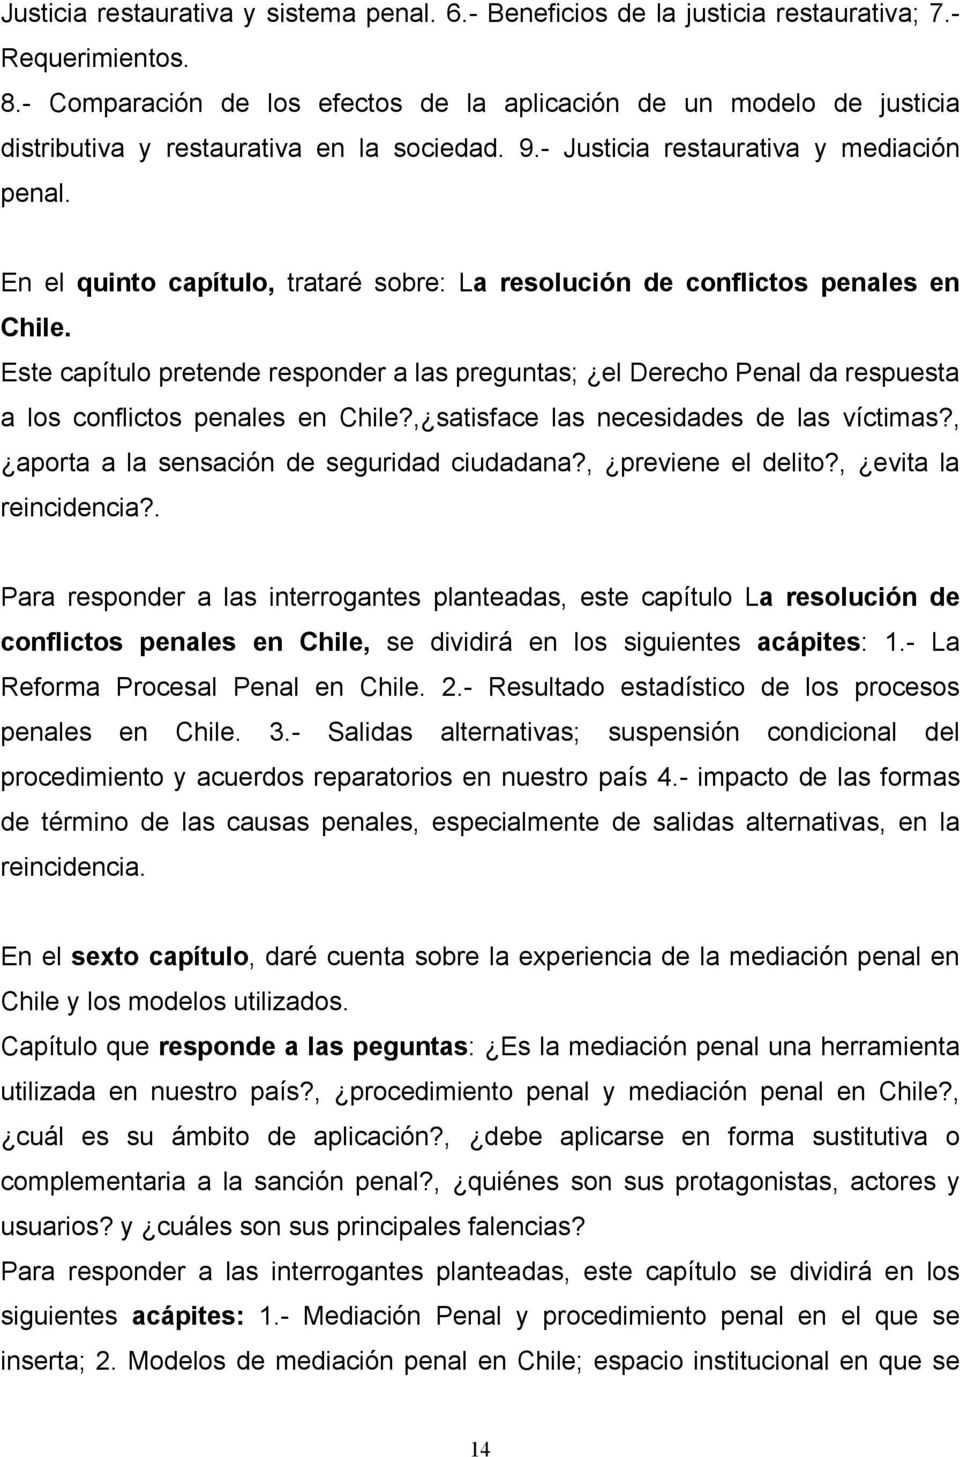 En el quinto capítulo, trataré sobre: La resolución de conflictos penales en Chile. Este capítulo pretende responder a las preguntas; el Derecho Penal da respuesta a los conflictos penales en Chile?